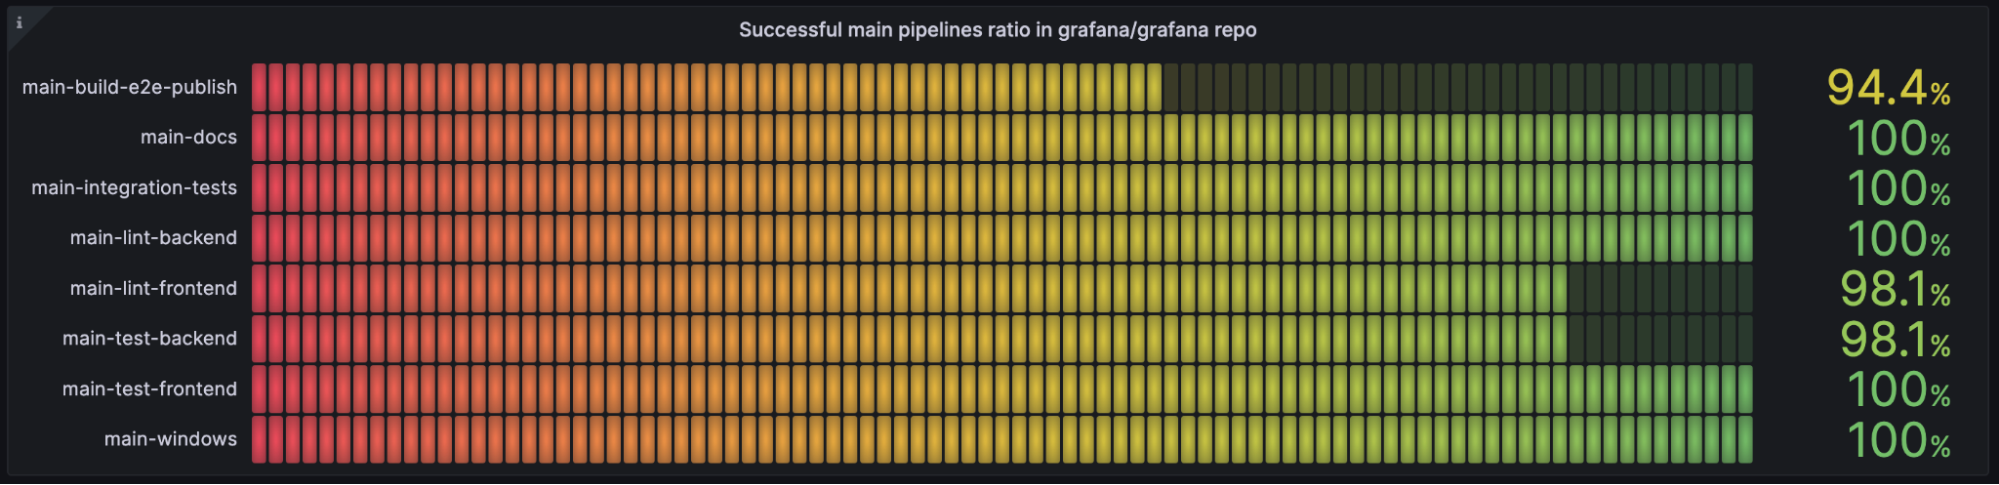 Heat map panel in Grafana showing successful pipeline ratio in Grafana repo